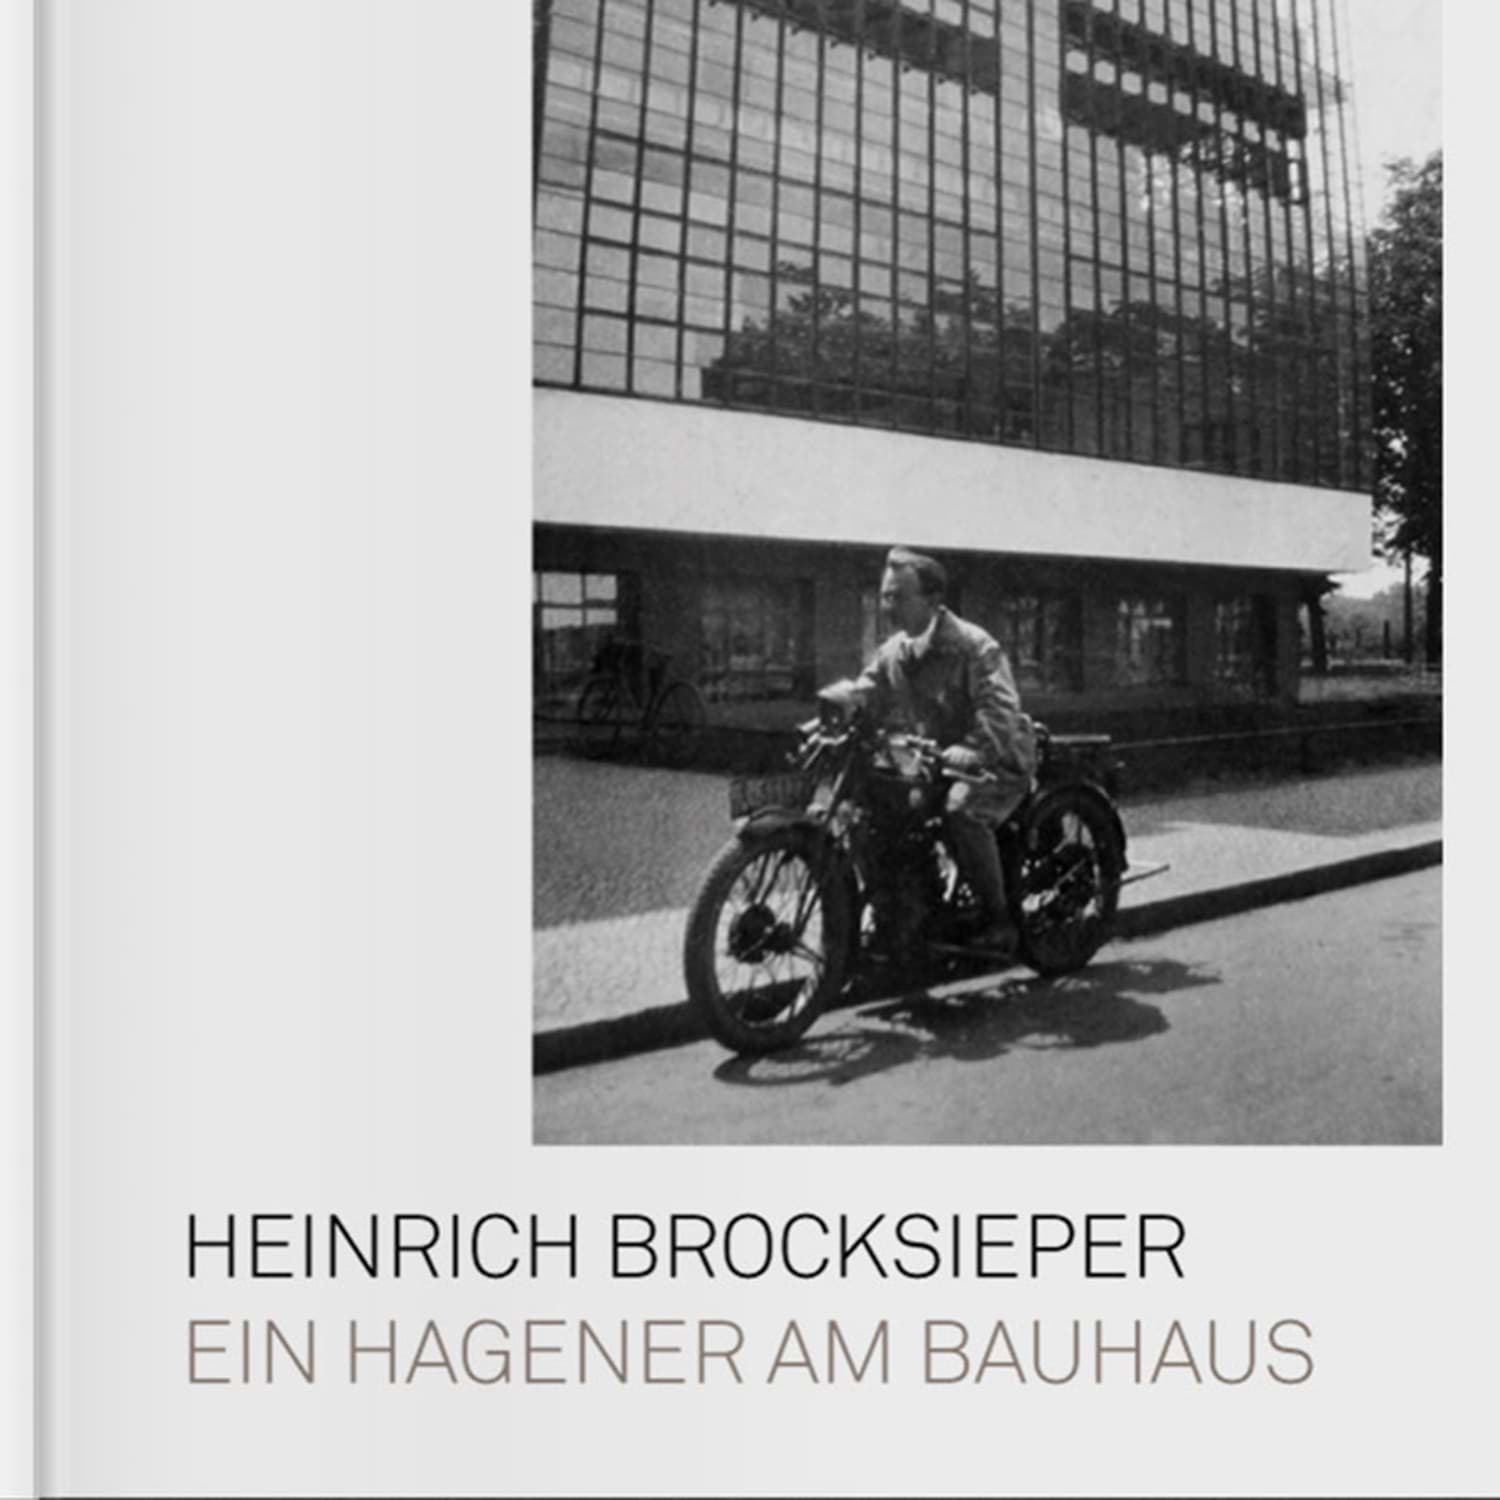 Ein Hagener am Bauhausの画像